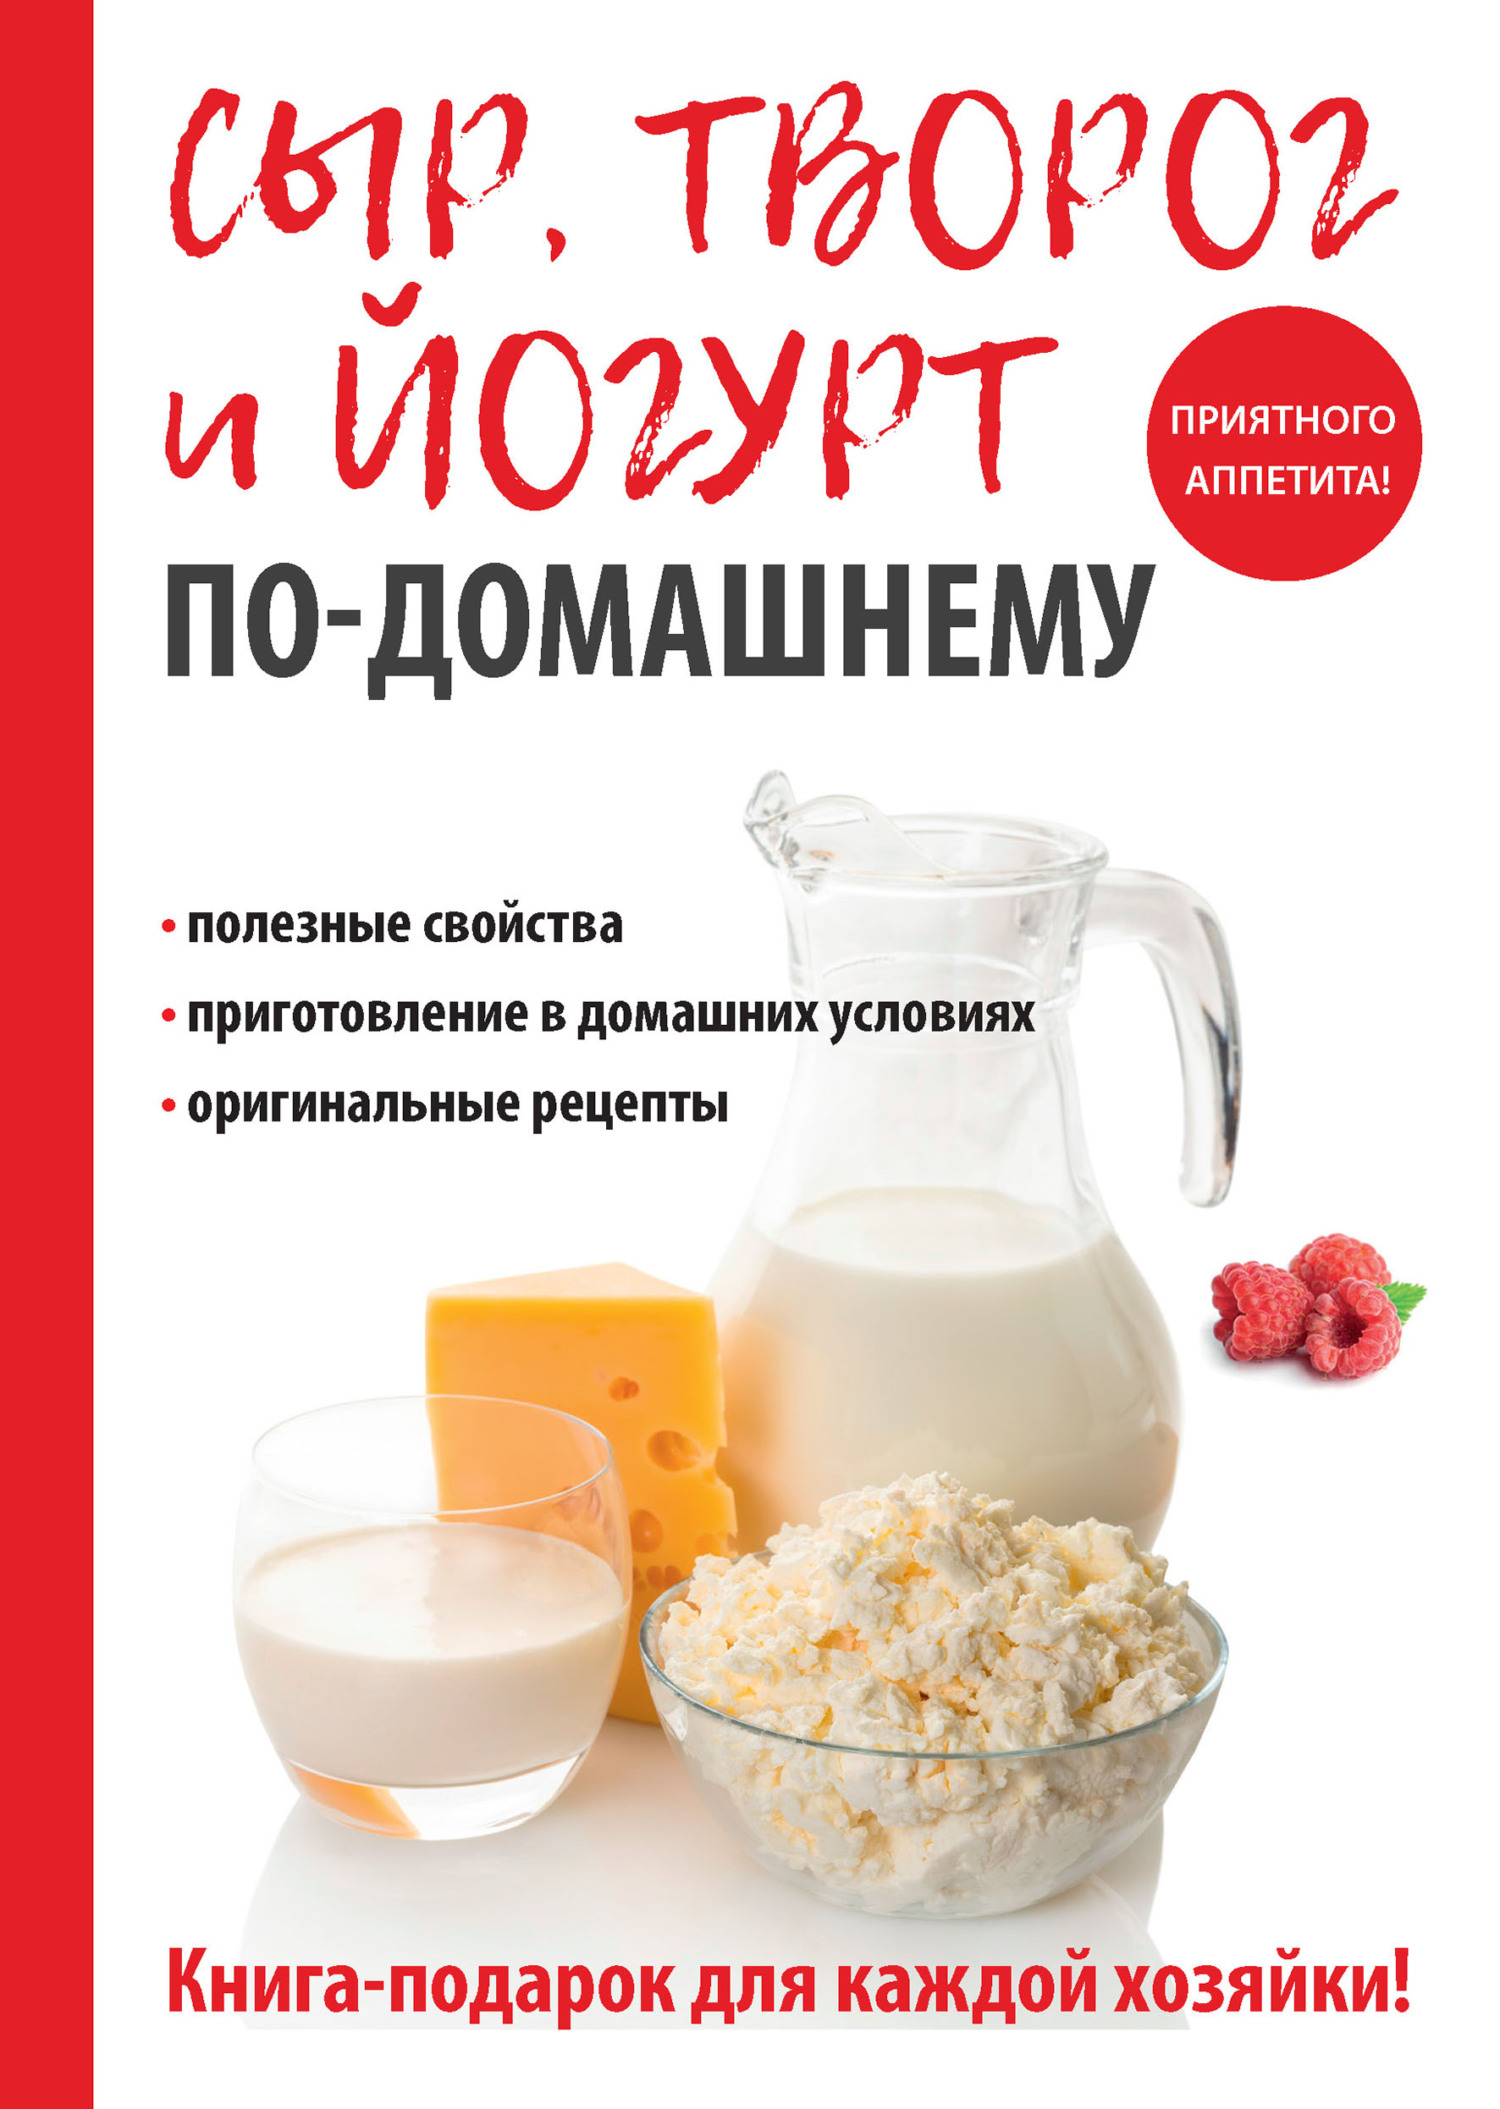 Анна Антонова Домашний сыр, творог и йогурт. Делаем сами